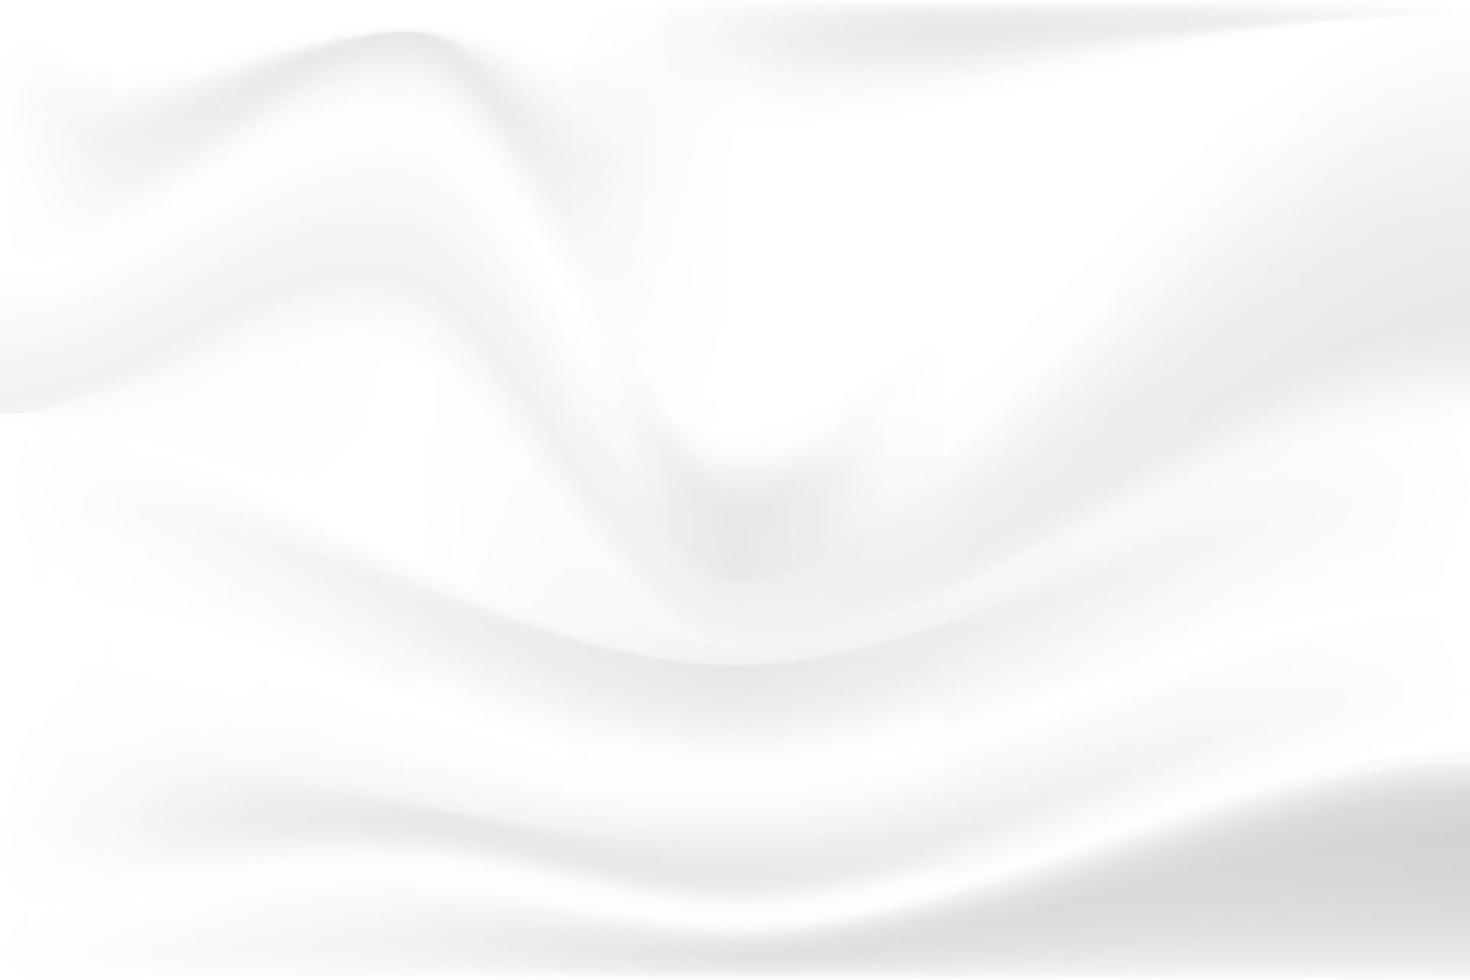 verfrommelde stof textuur. doek zachte golf gevouwen witte abstracte achtergrond. illustratie vector